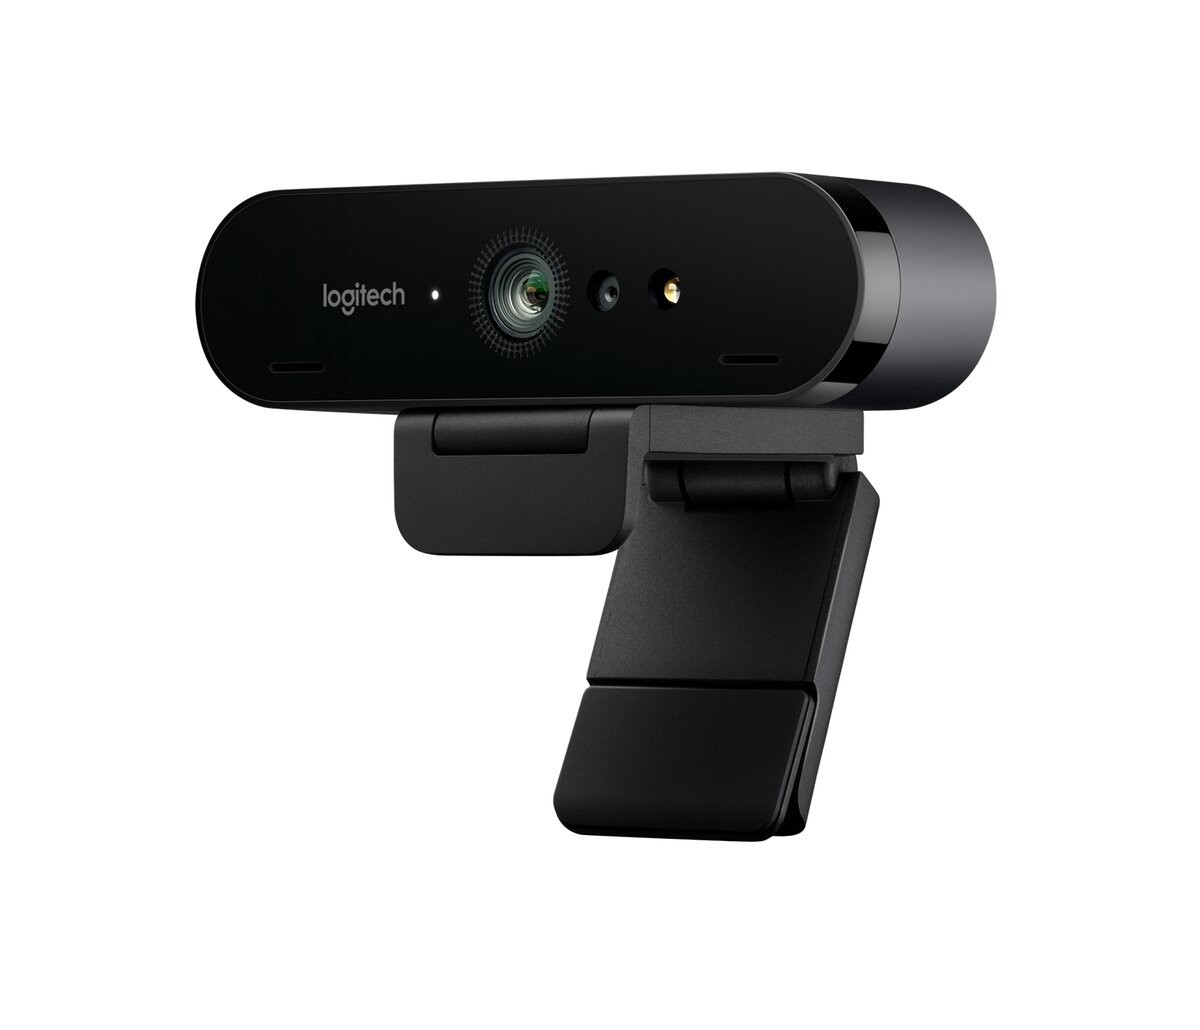 couleur A USB 2.0 Webcam HD Caméra Webcam Avec Micro Pour Ordinateur  Portable PC De Bureau Mini Caméra Web av